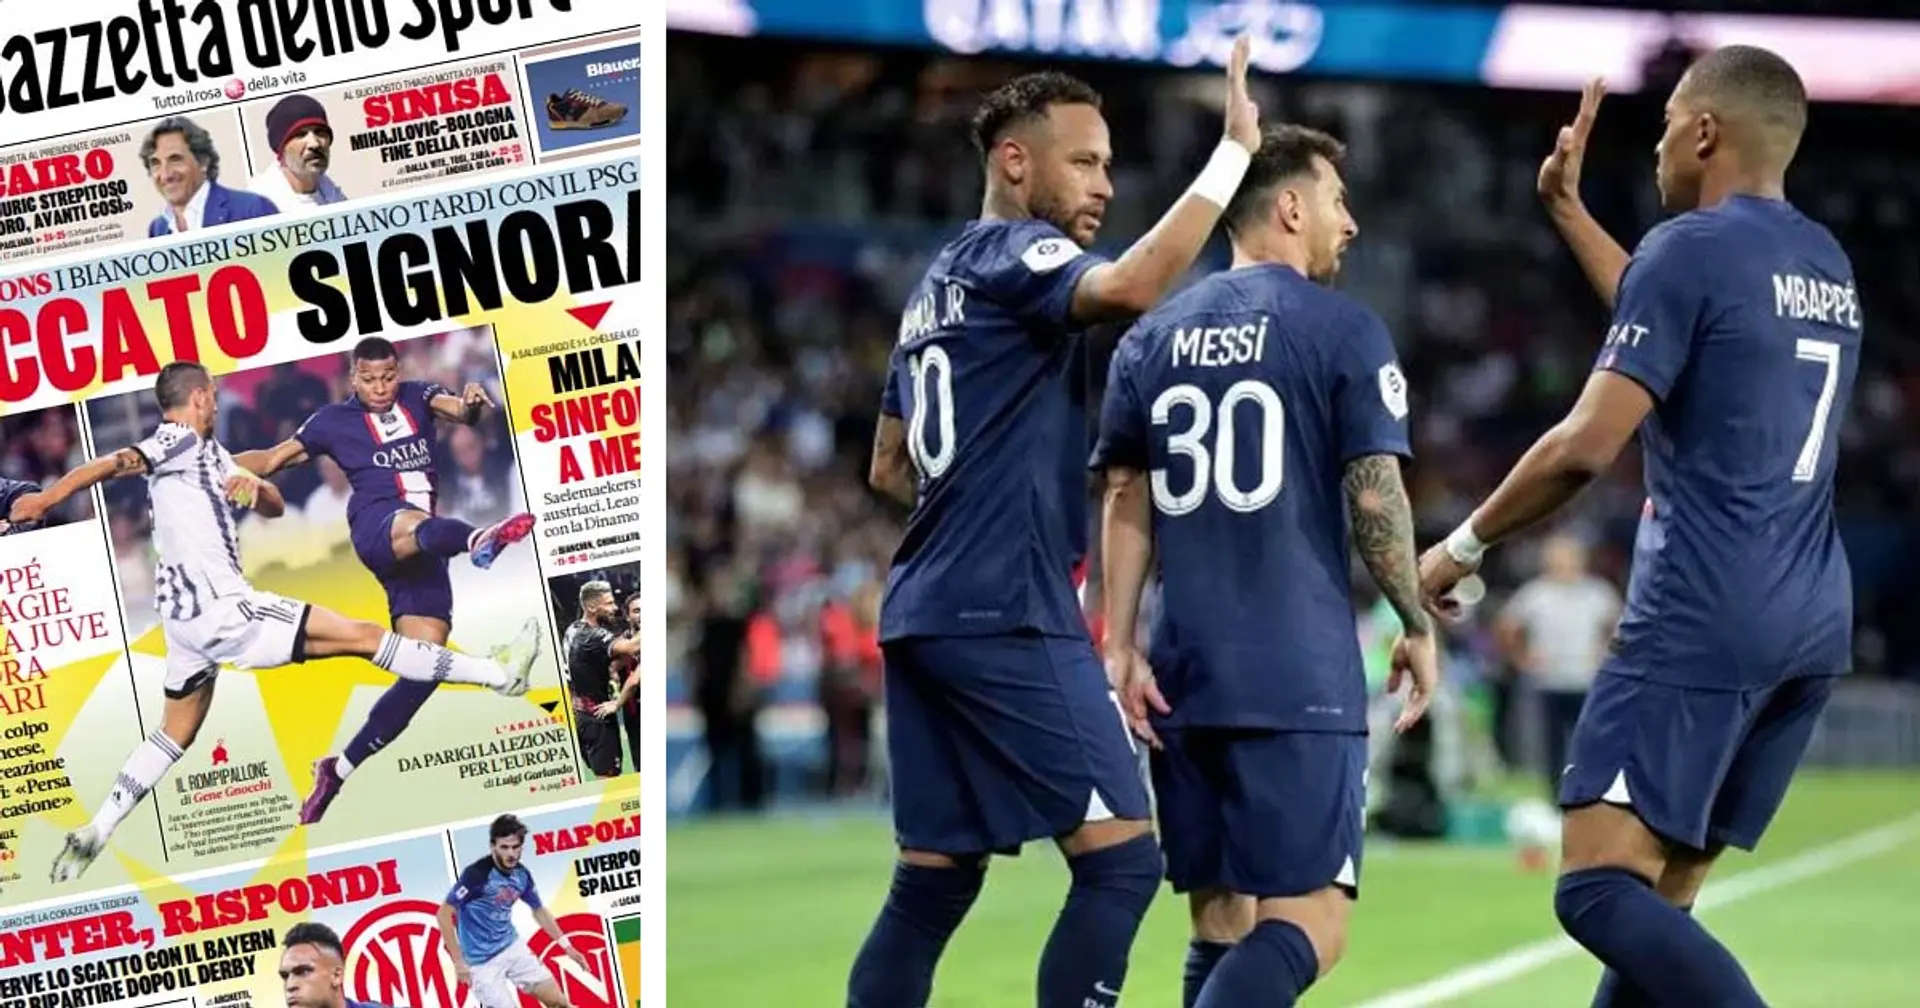 "La digue était solide mais ne pouvait rien contre la magie", la presse italienne reconnait la supériorité du PSG